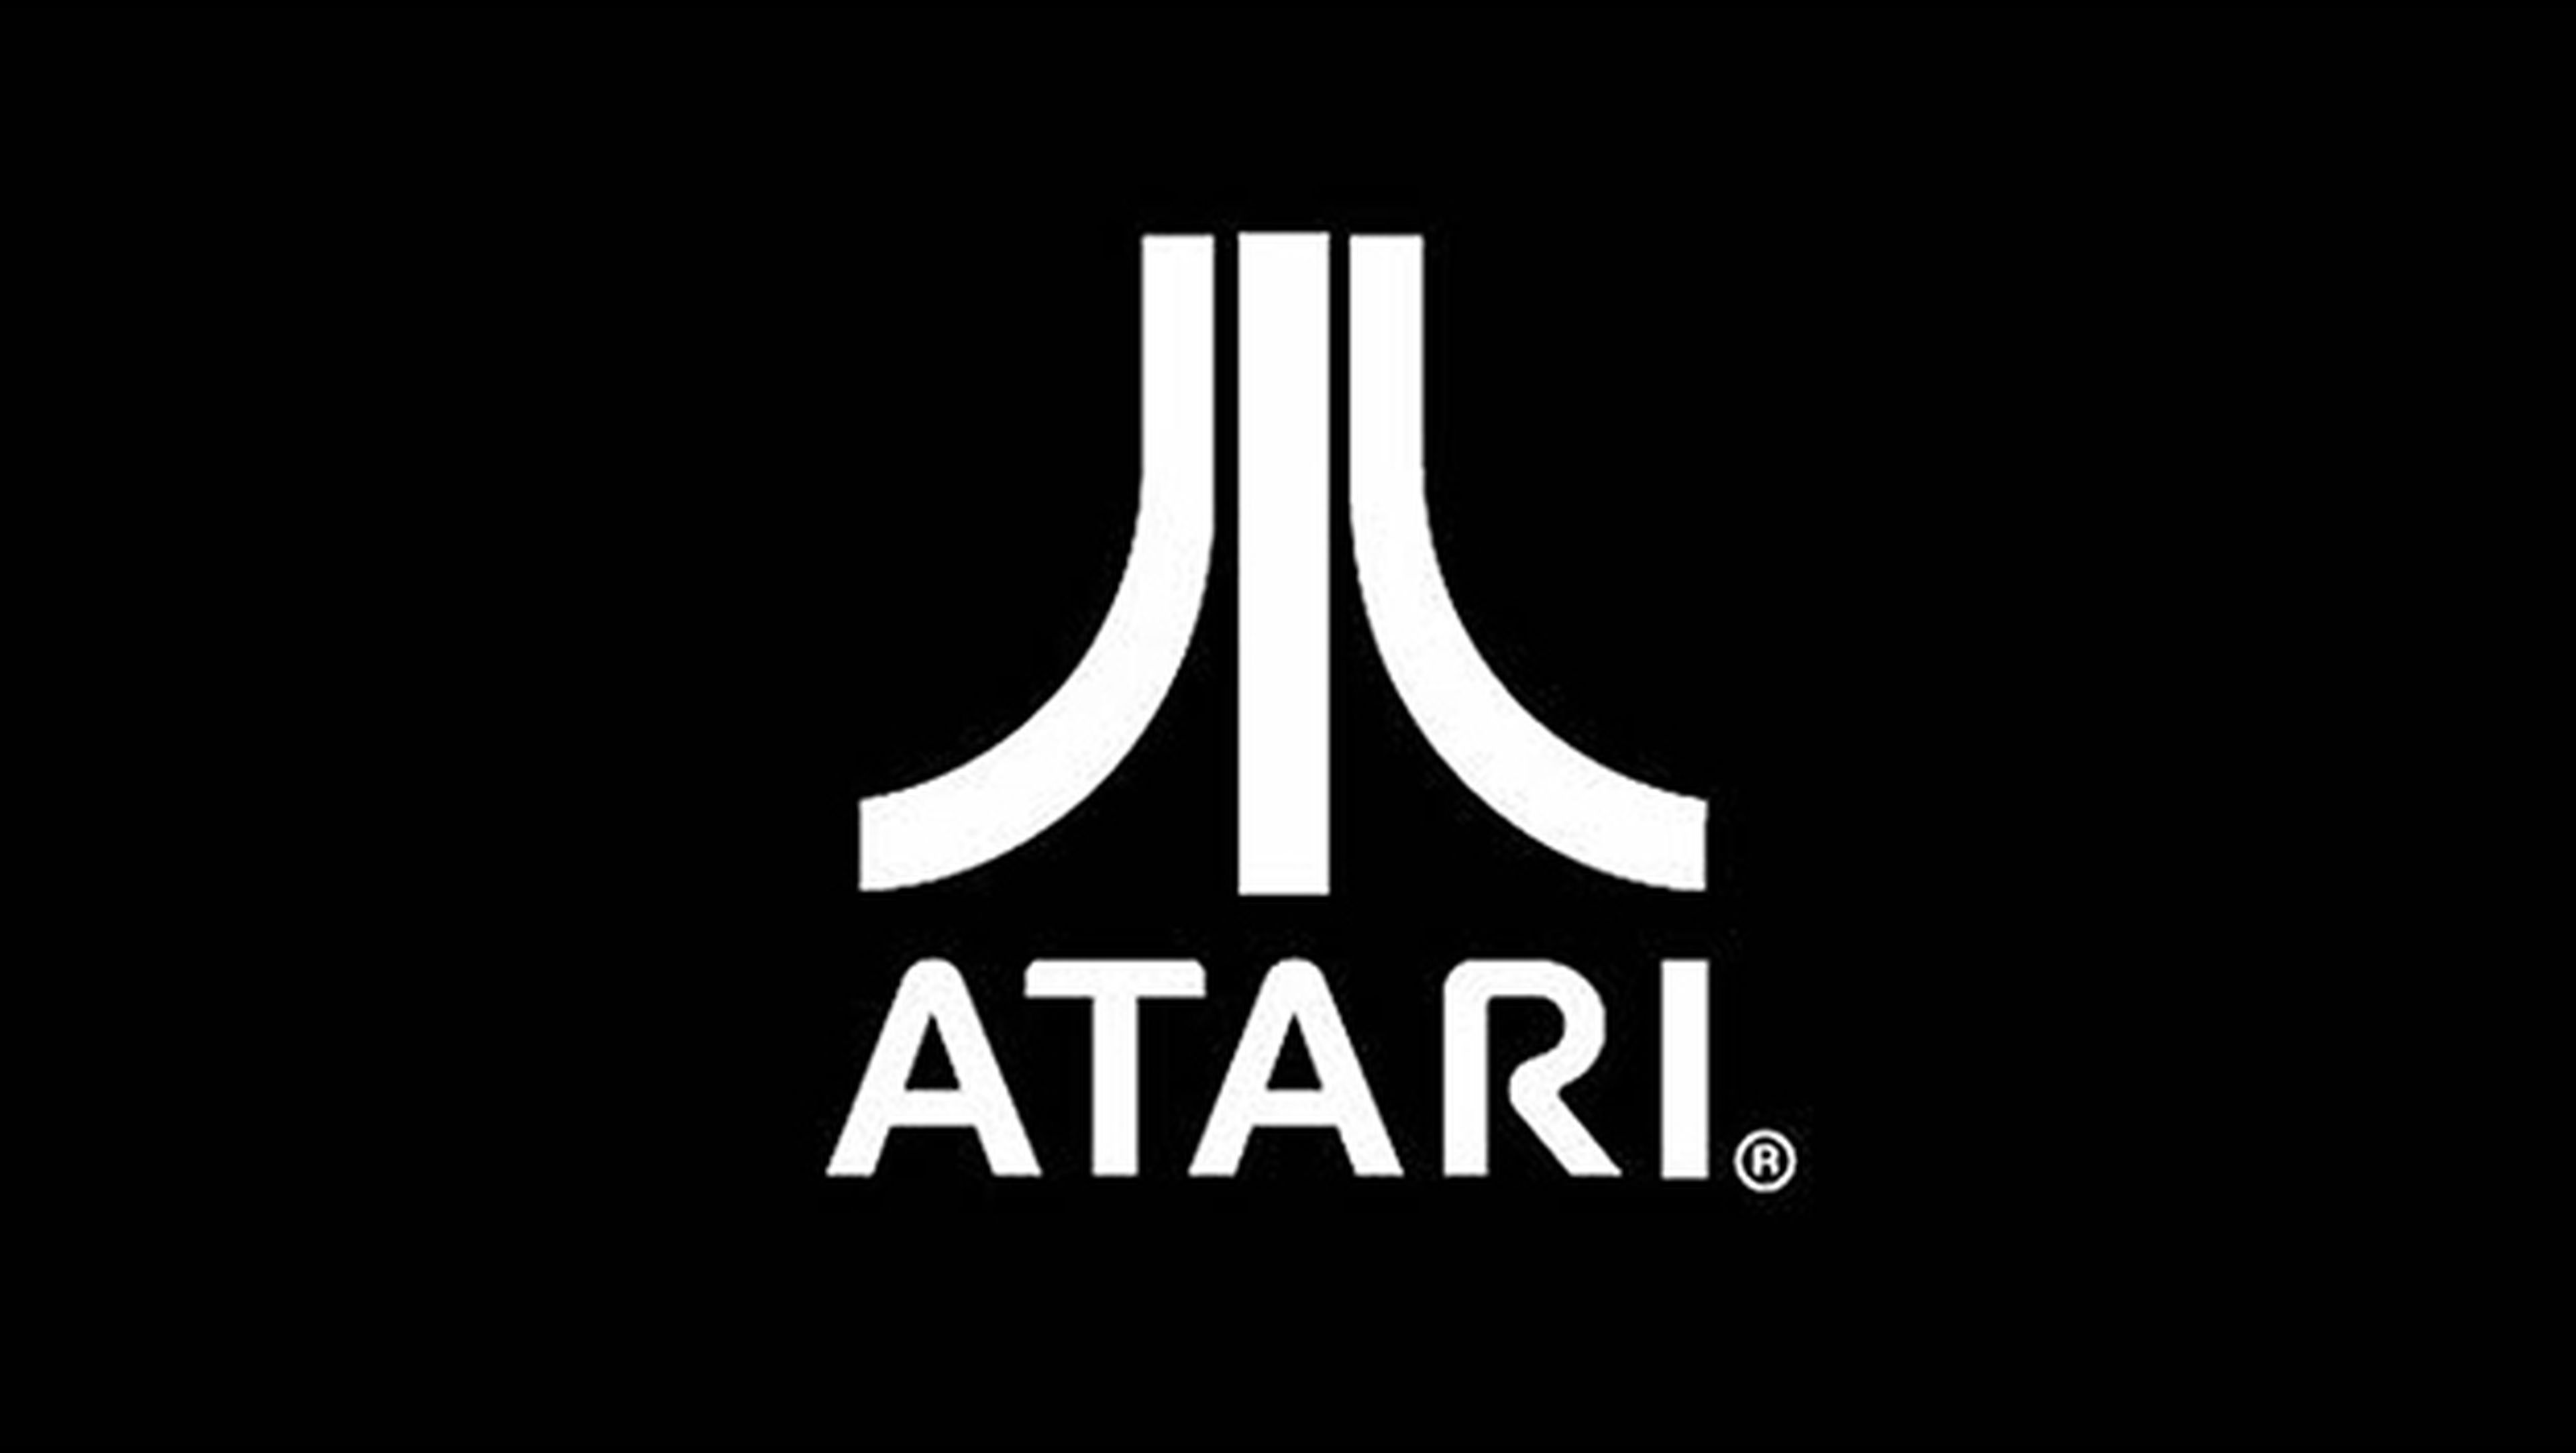 Atari confirma estar trabajando en una nueva consola, con arquitectura PC